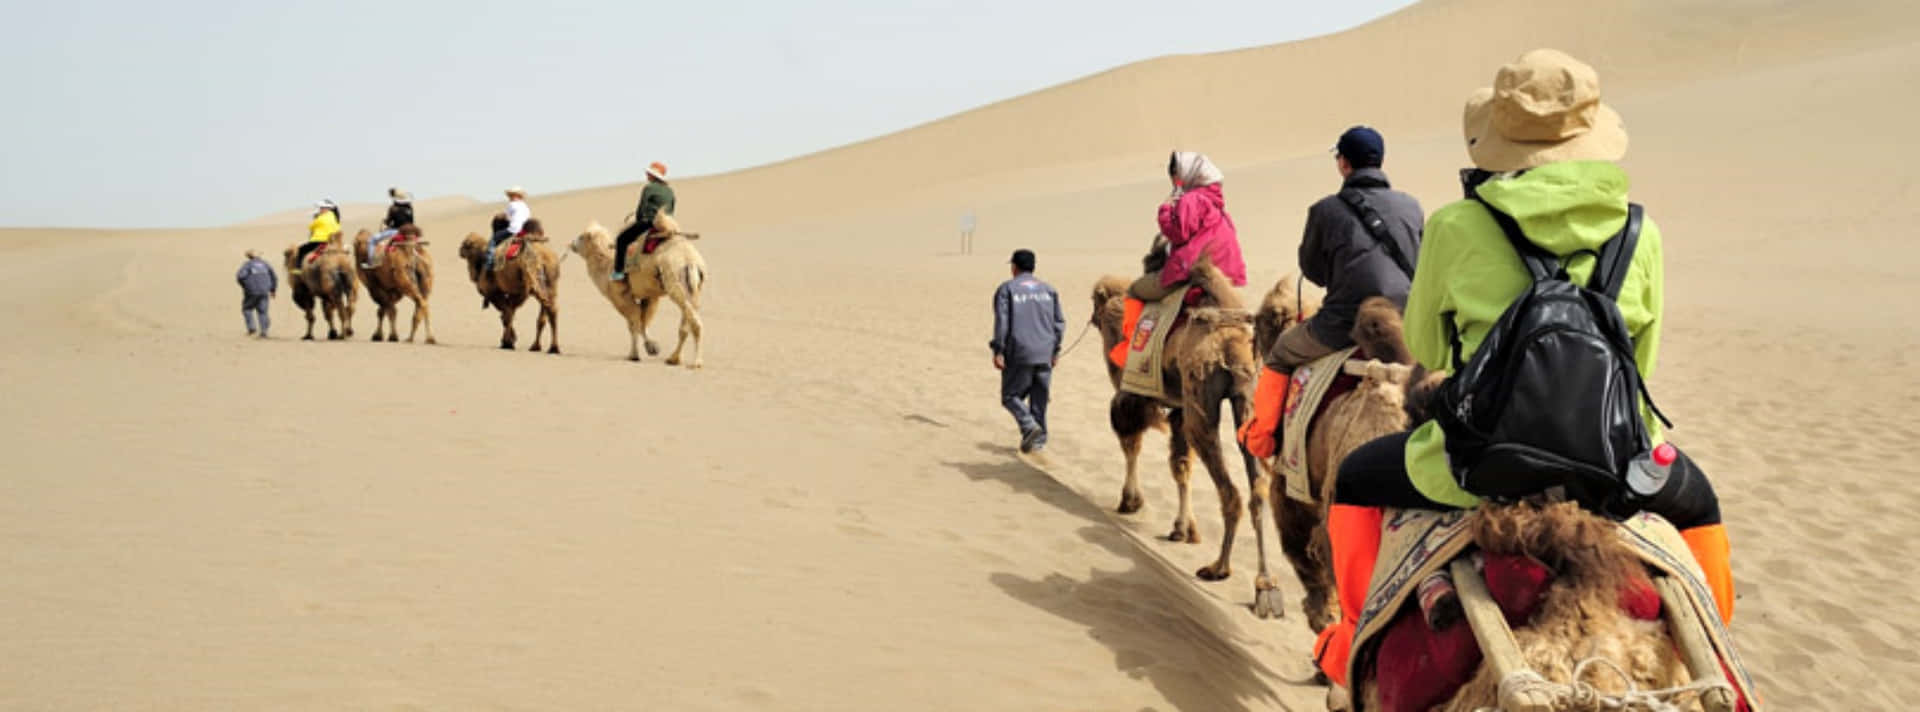 Ungrupo De Personas Montando Camellos A Través Del Desierto